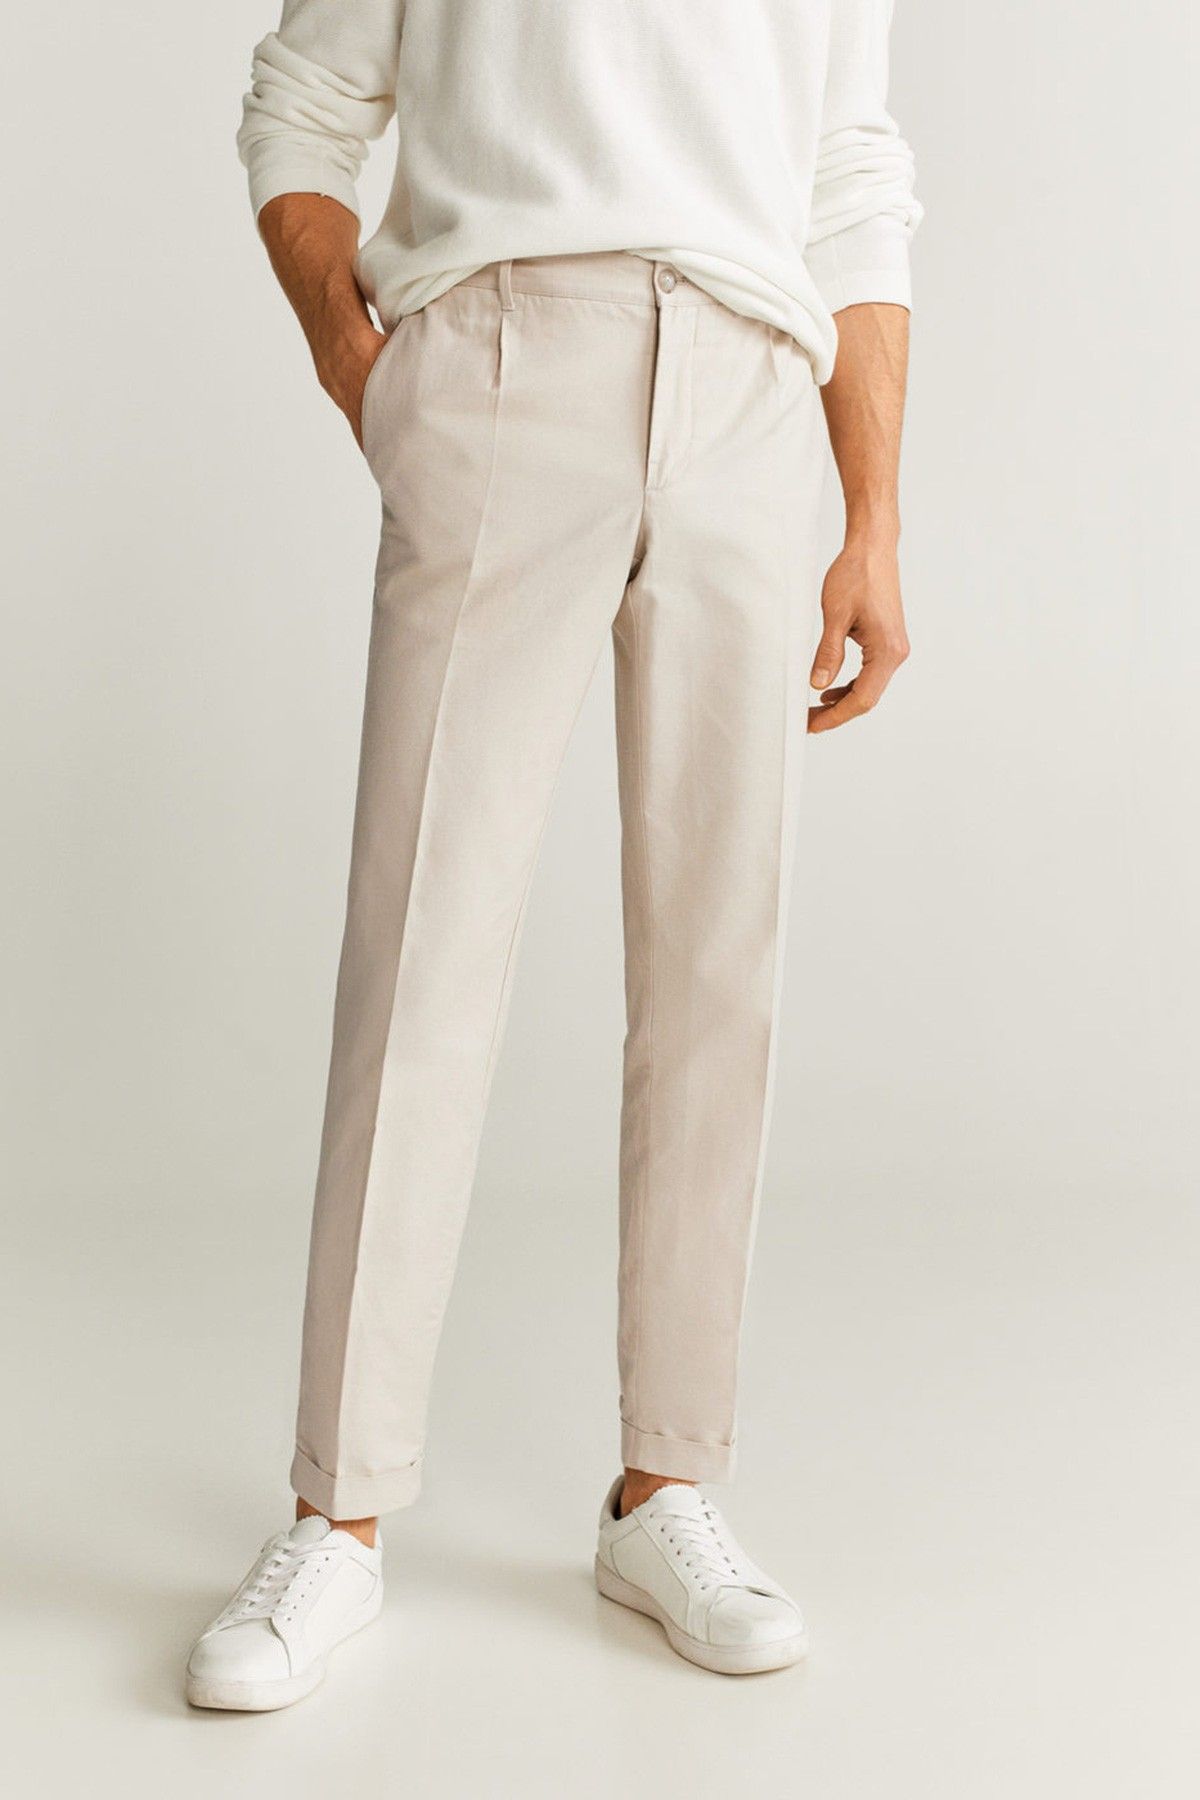 1PA1 Men's Flat Front Dress Pants Slim Fit Linen Cotton Trousers,Pink,30 -  Walmart.com